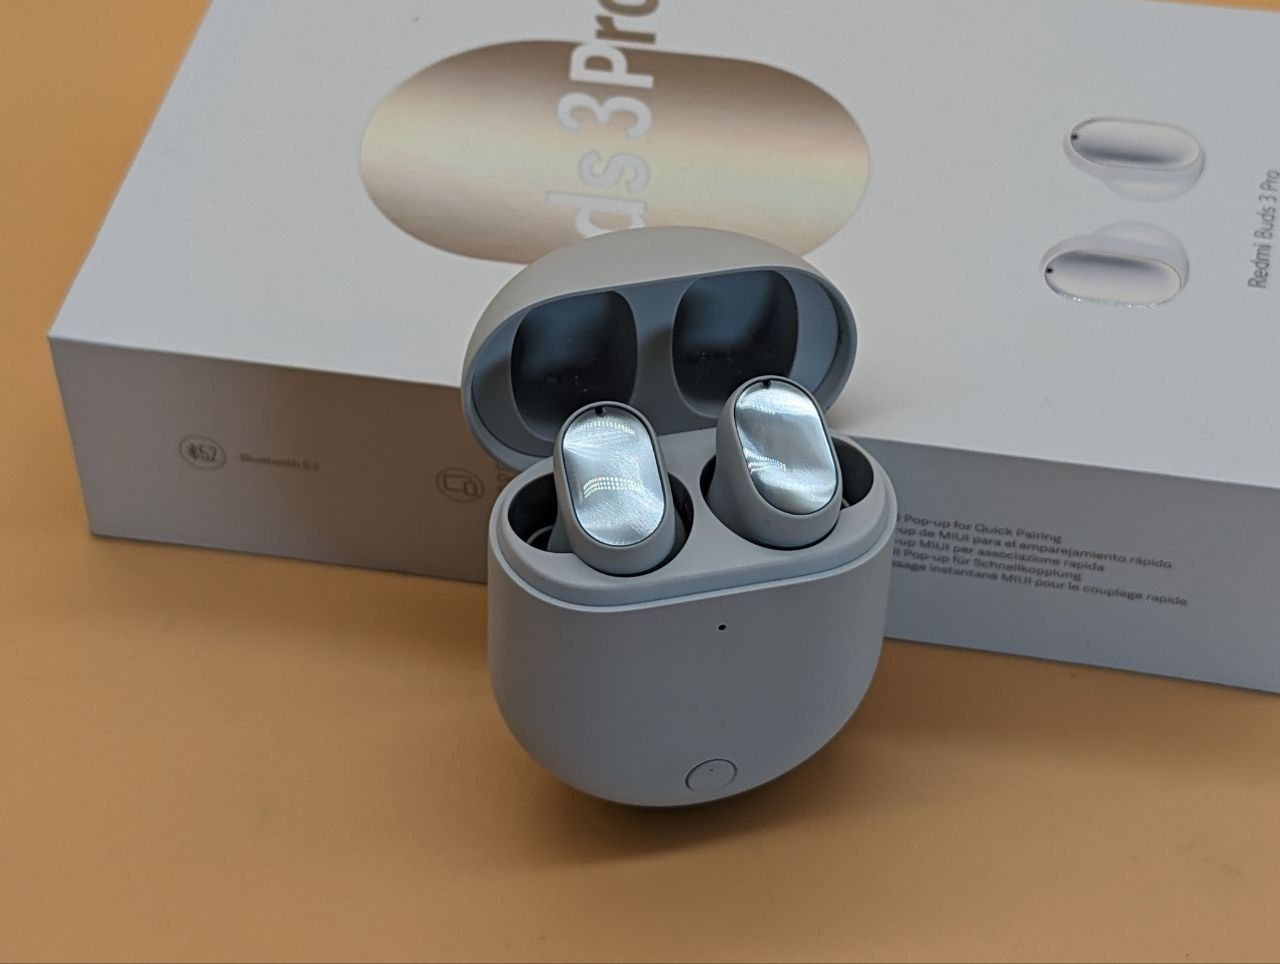 Розпродаж. Навушники Redmi Buds 3 Pro (BHR5194GL) Glacier Grey сірі